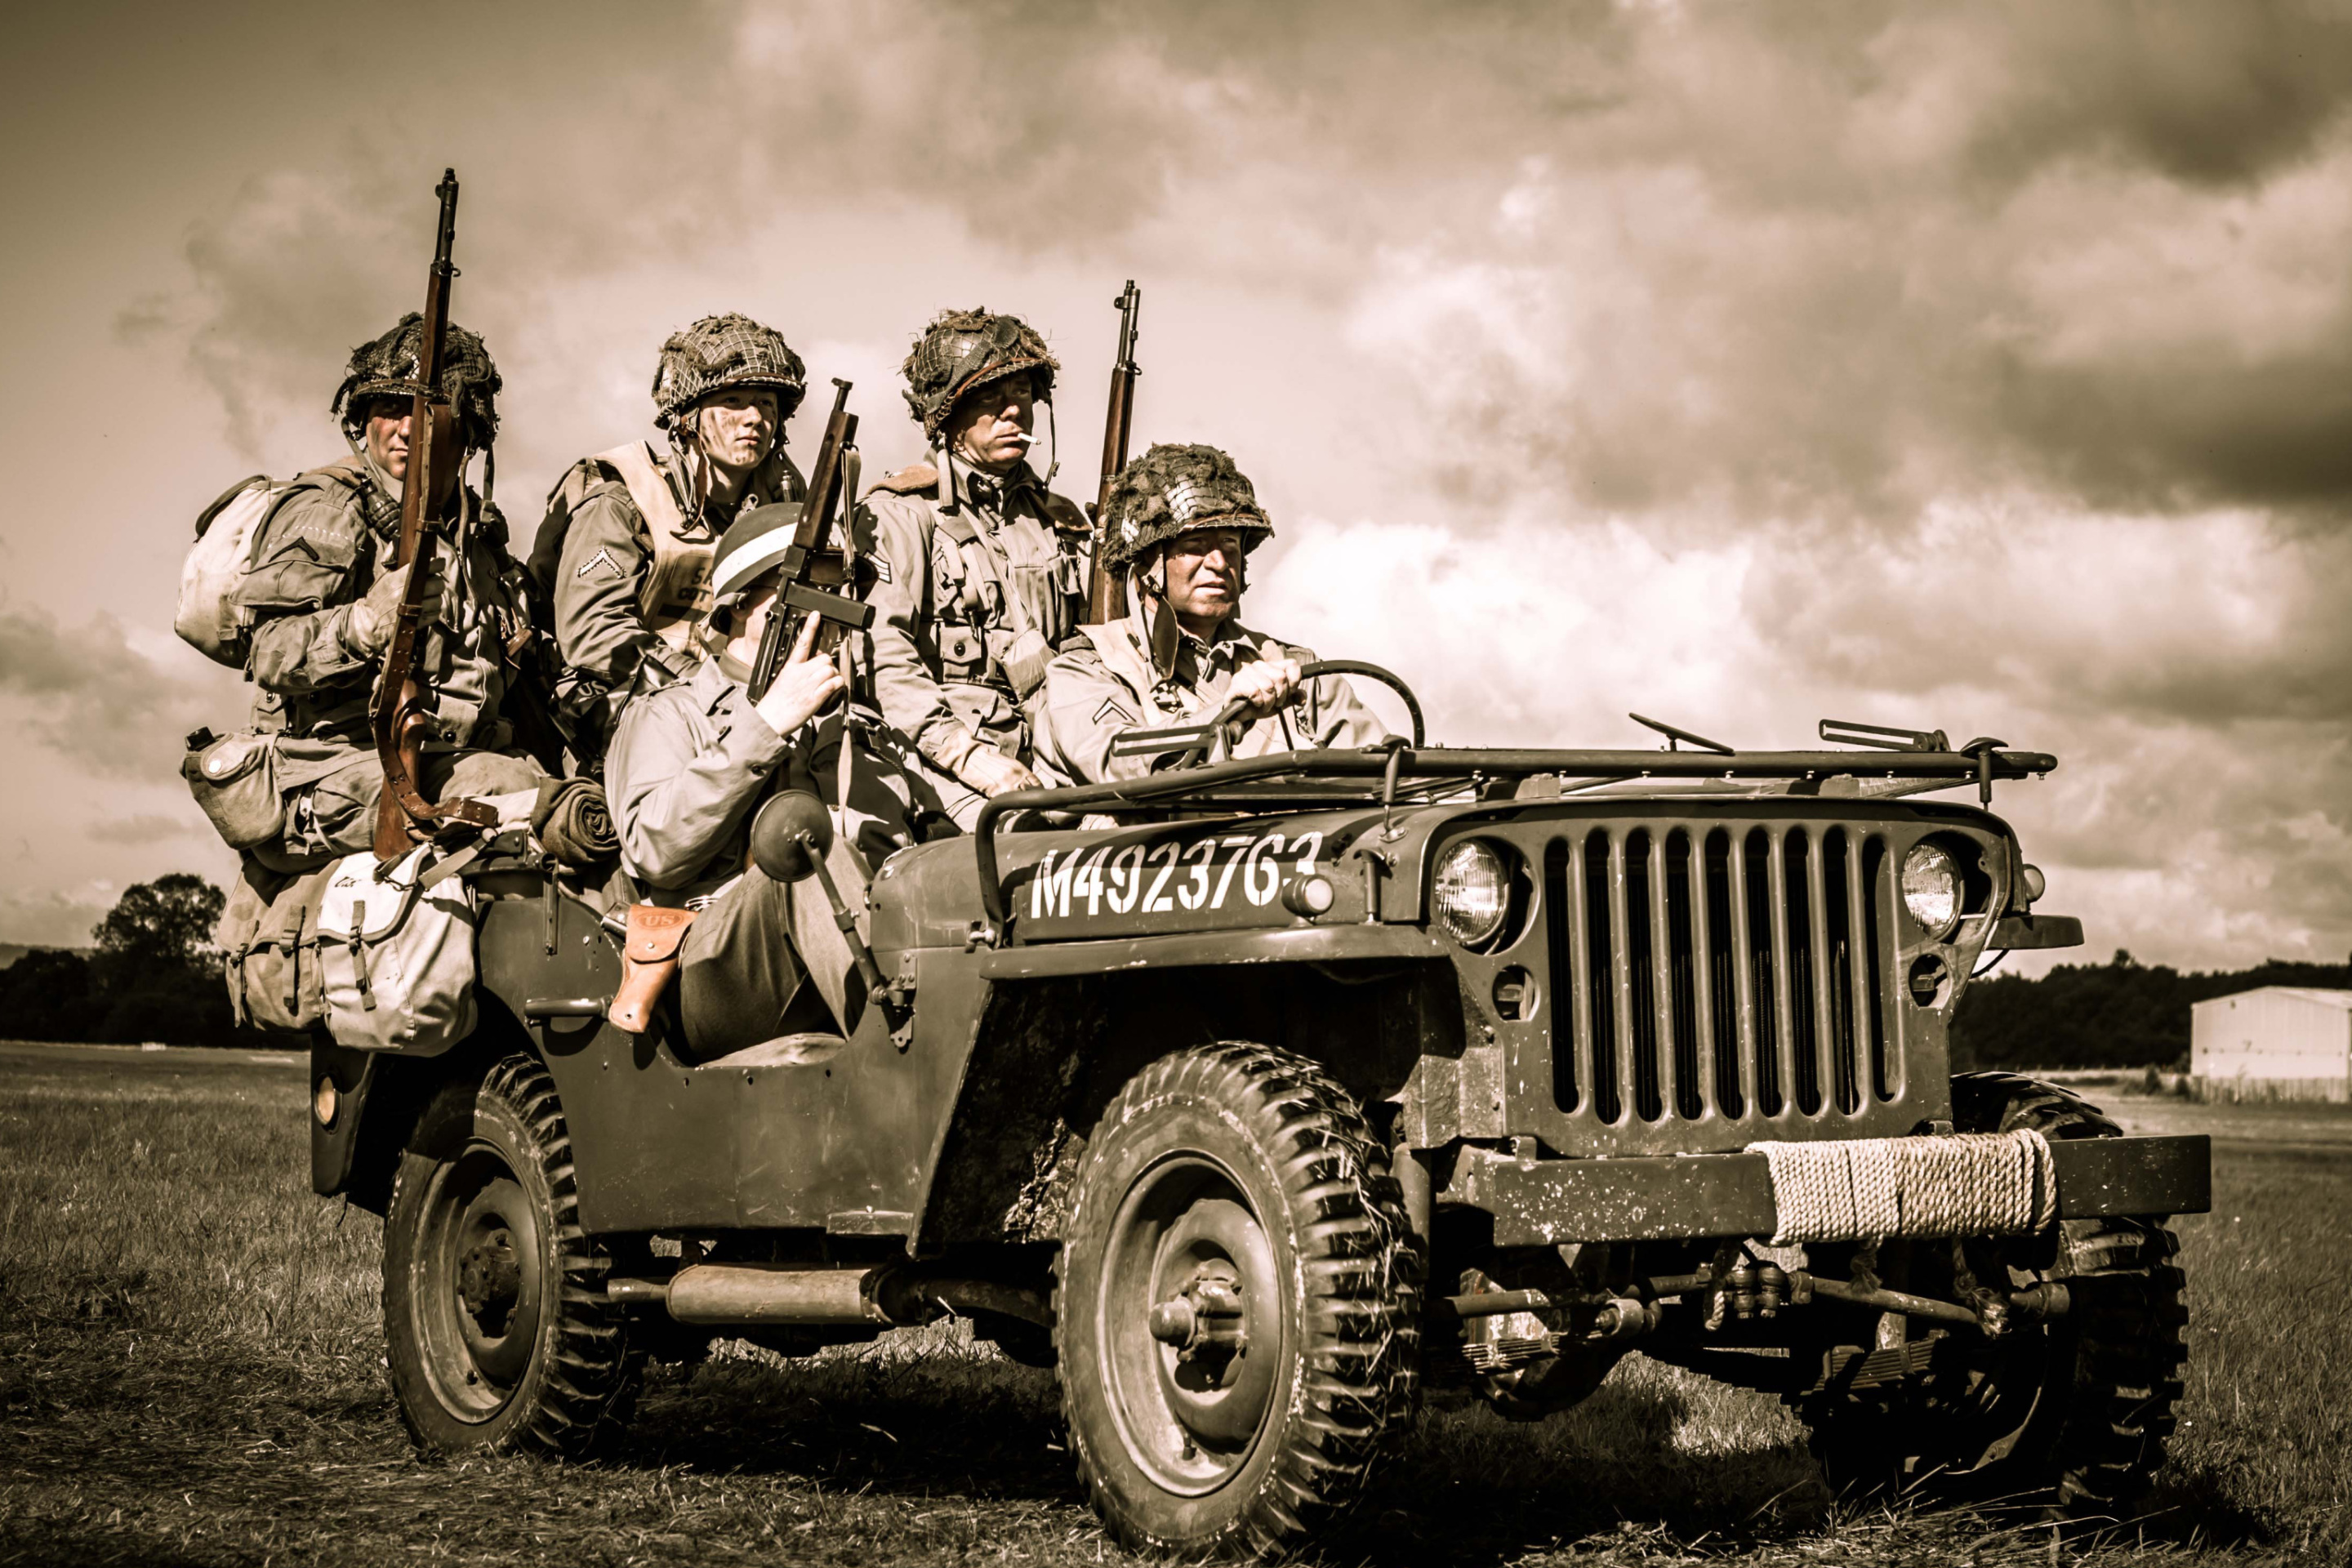 Обои Soldiers on Jeep 2880x1920